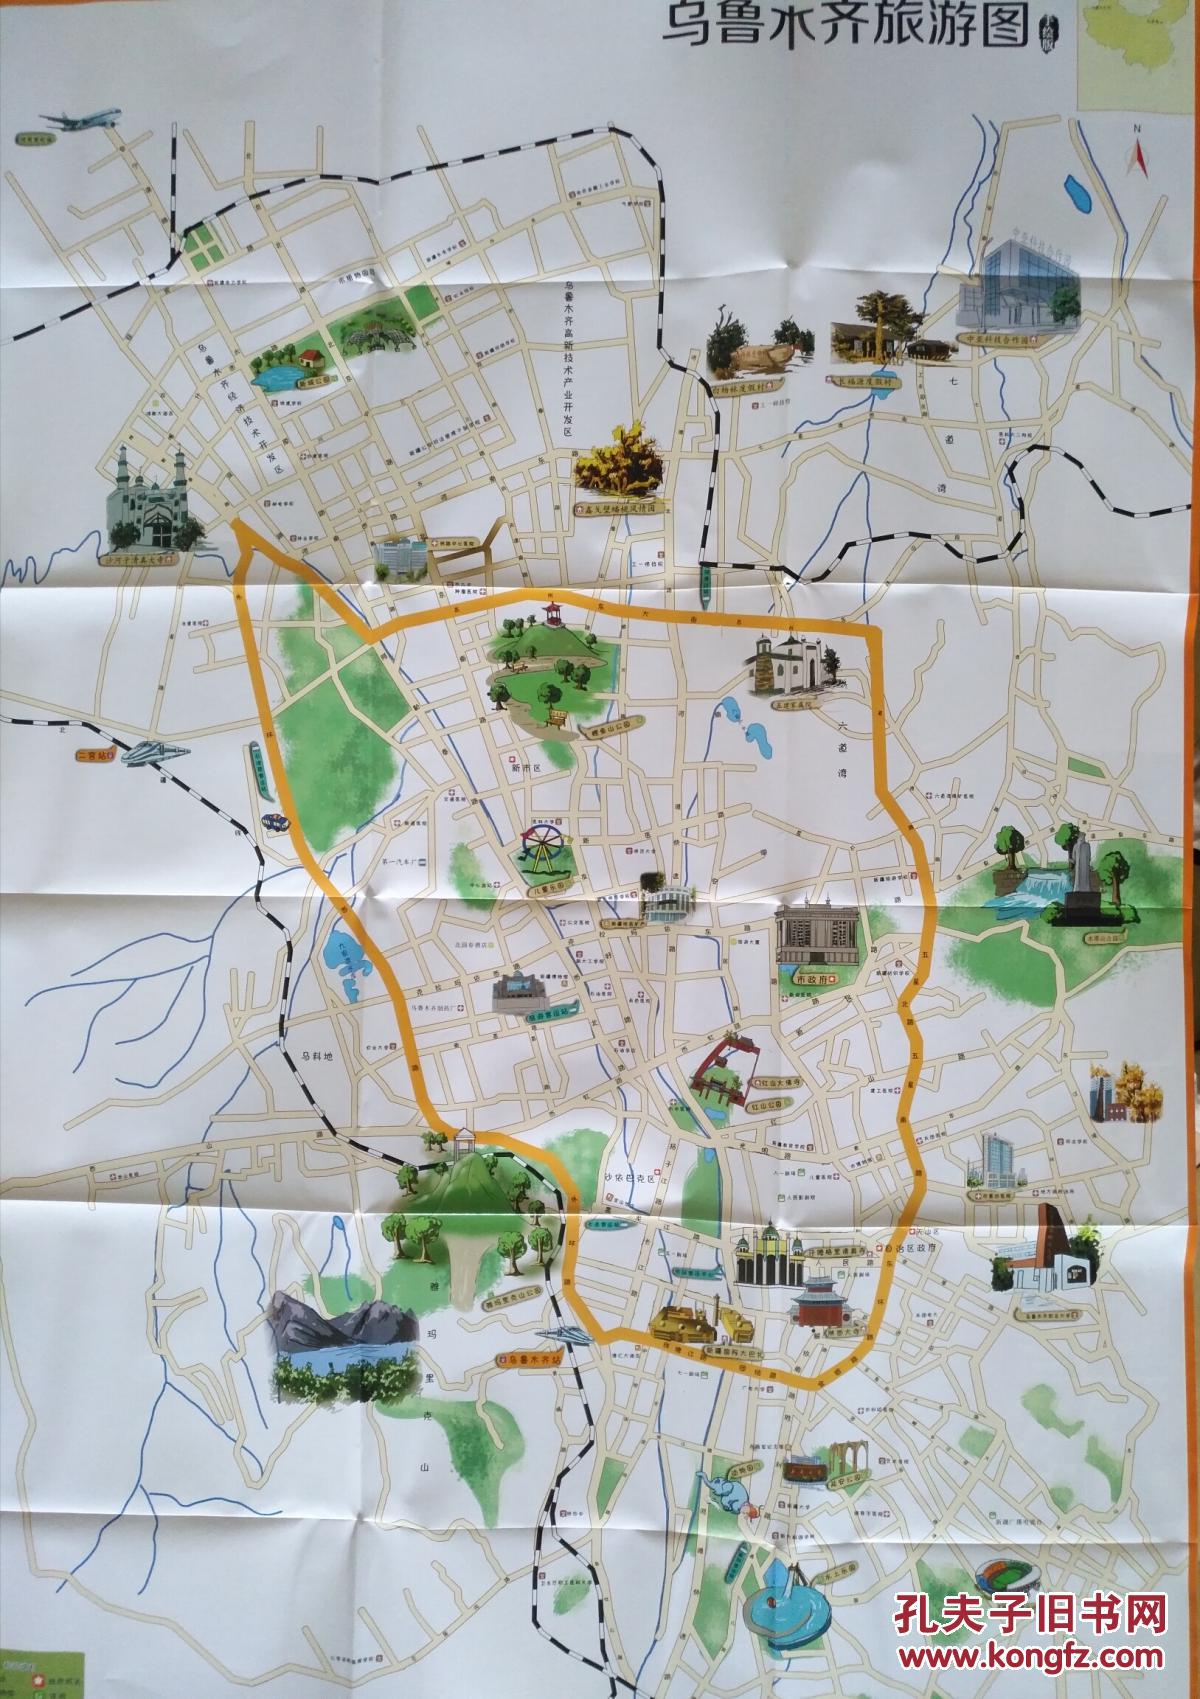 乌鲁木齐市旅游手绘地图 乌鲁木齐地图 乌鲁木齐市地图